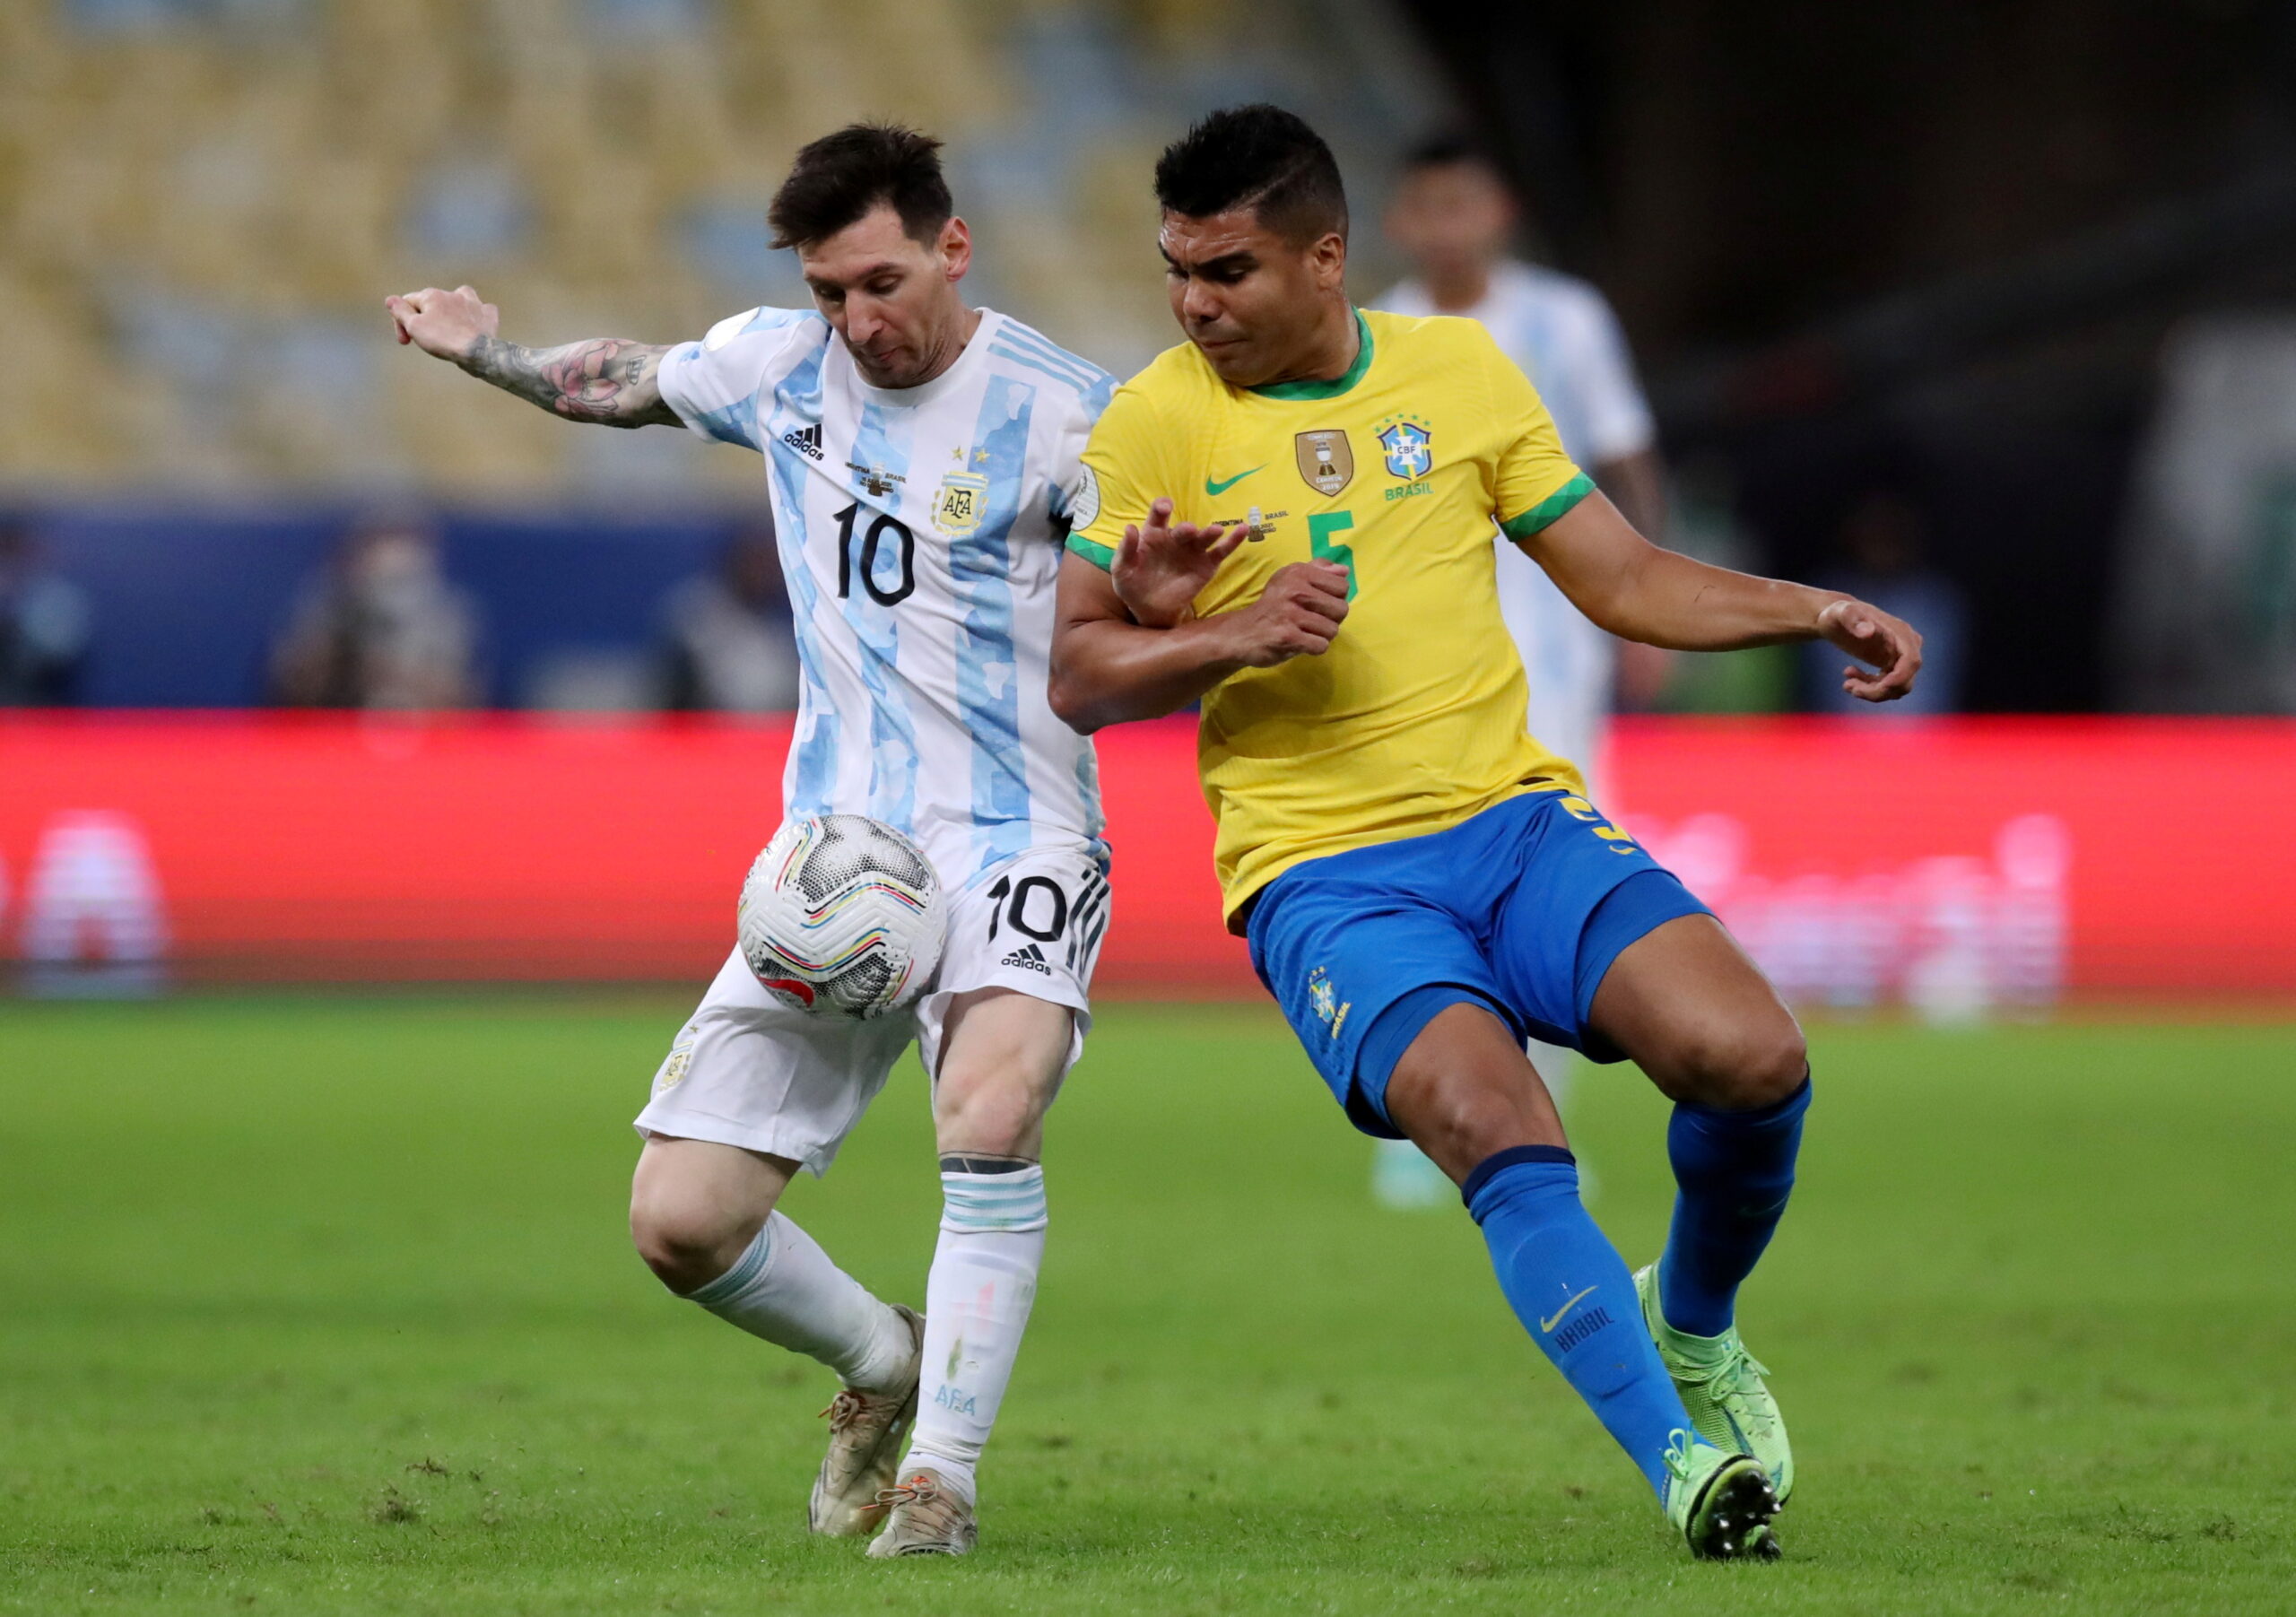 FOTO DE ARCHIVO: Fútbol - Copa América 2021 - Final - Brasil vs Argentina - El centrocampista del Real Madrid Casemiro en acción con el argentino Lionel Messi